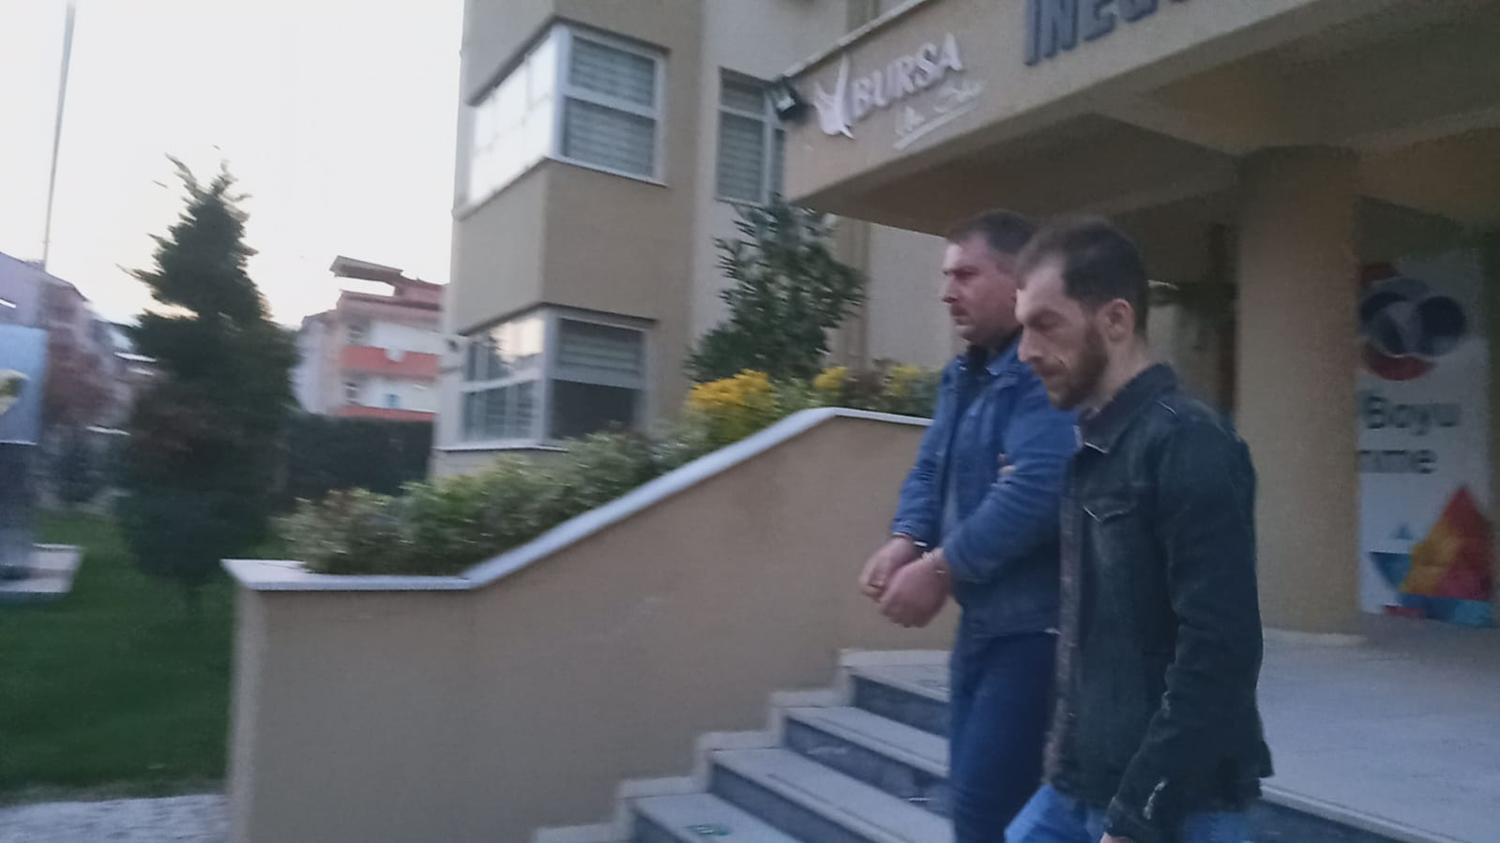 Bursa'da ehliyet snavnda kopya ekmeye alan kii yakaland